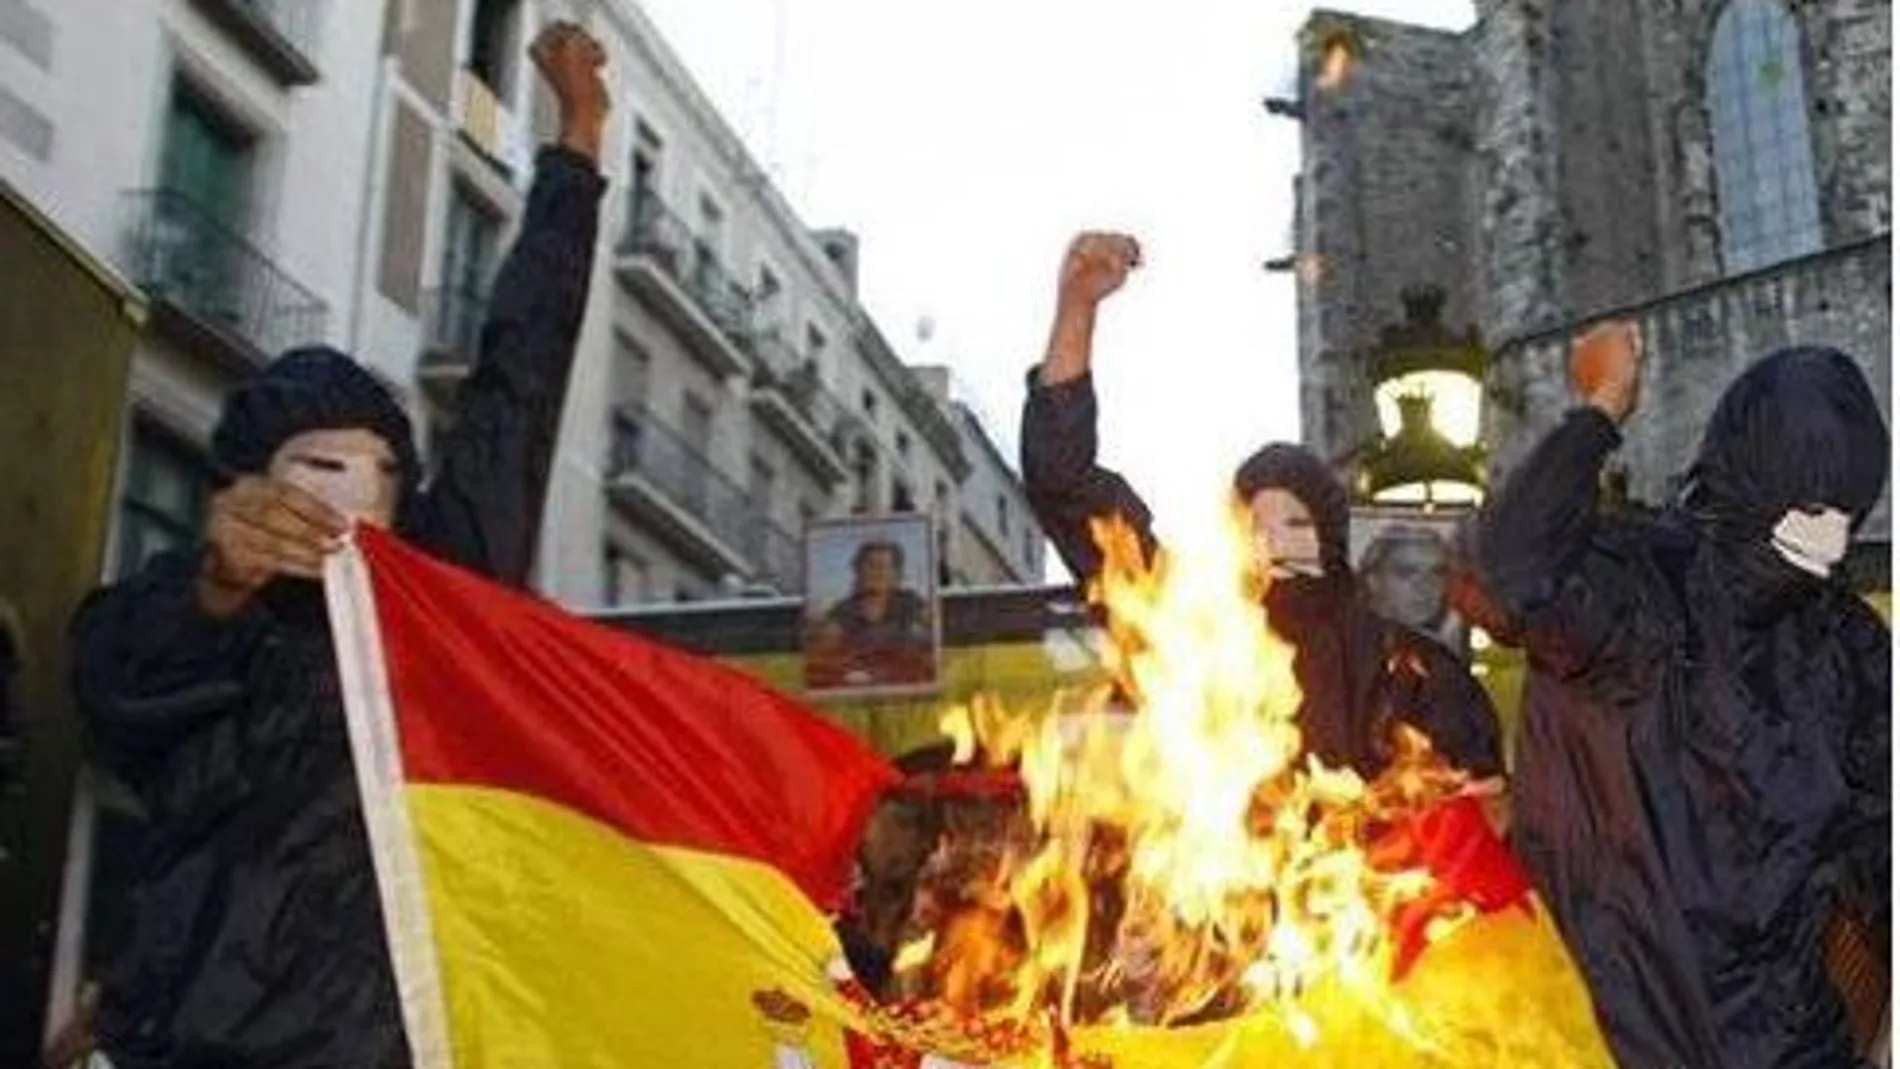 En una de sus publicaciones el acusado incluyó la bandera de España ardiendo con la leyenda "Esto es lo que hago con la puta bandera burguesa española".